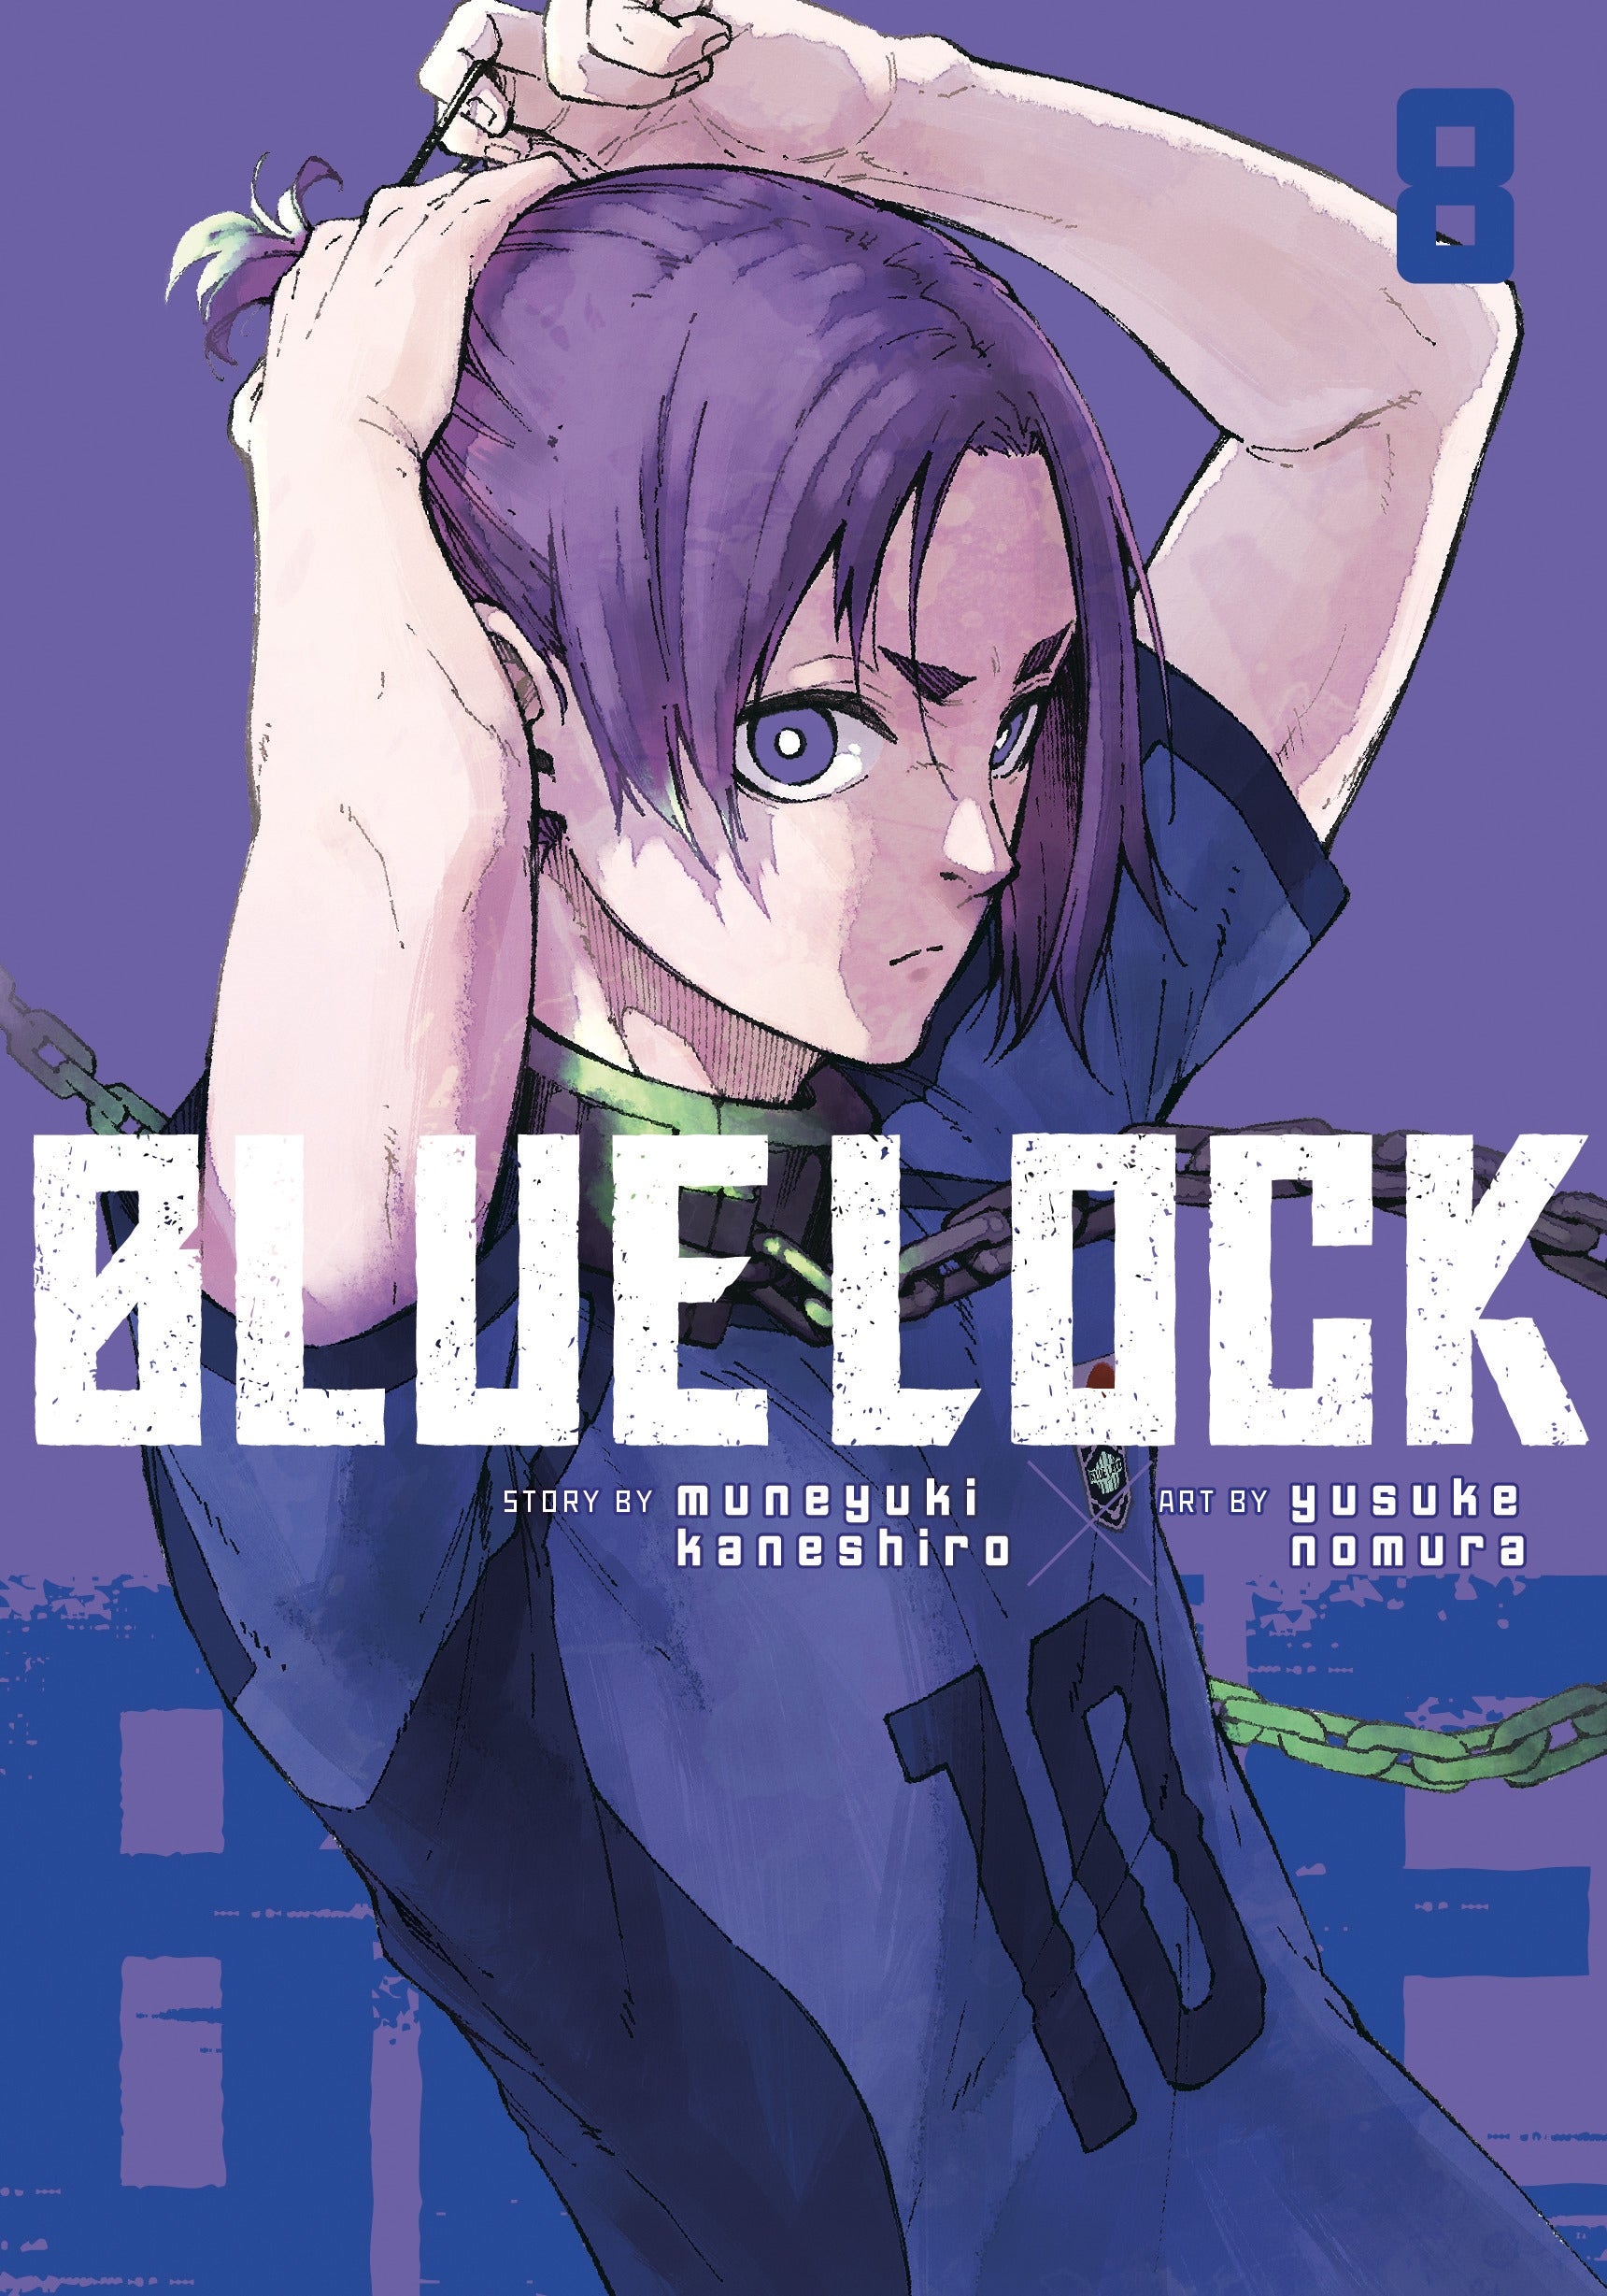 Blue Lock / Bluelock (VOL.1 - 24 End) ~ All Region ~ English